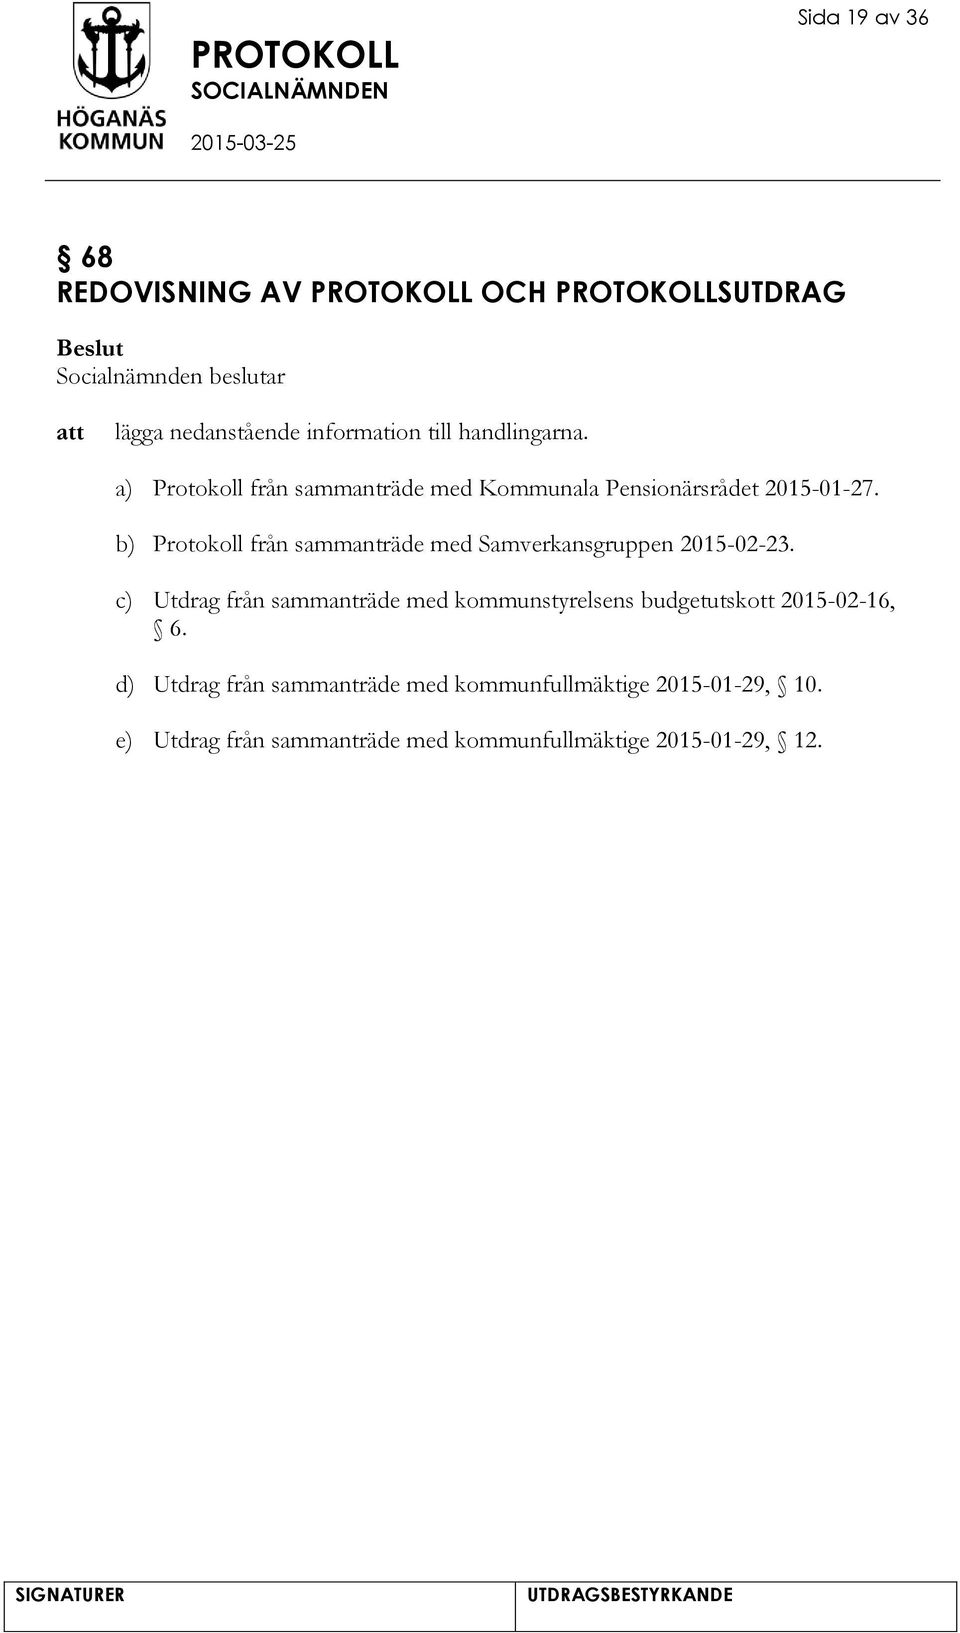 b) Protokoll från sammanträde med Samverkansgruppen 2015-02-23.